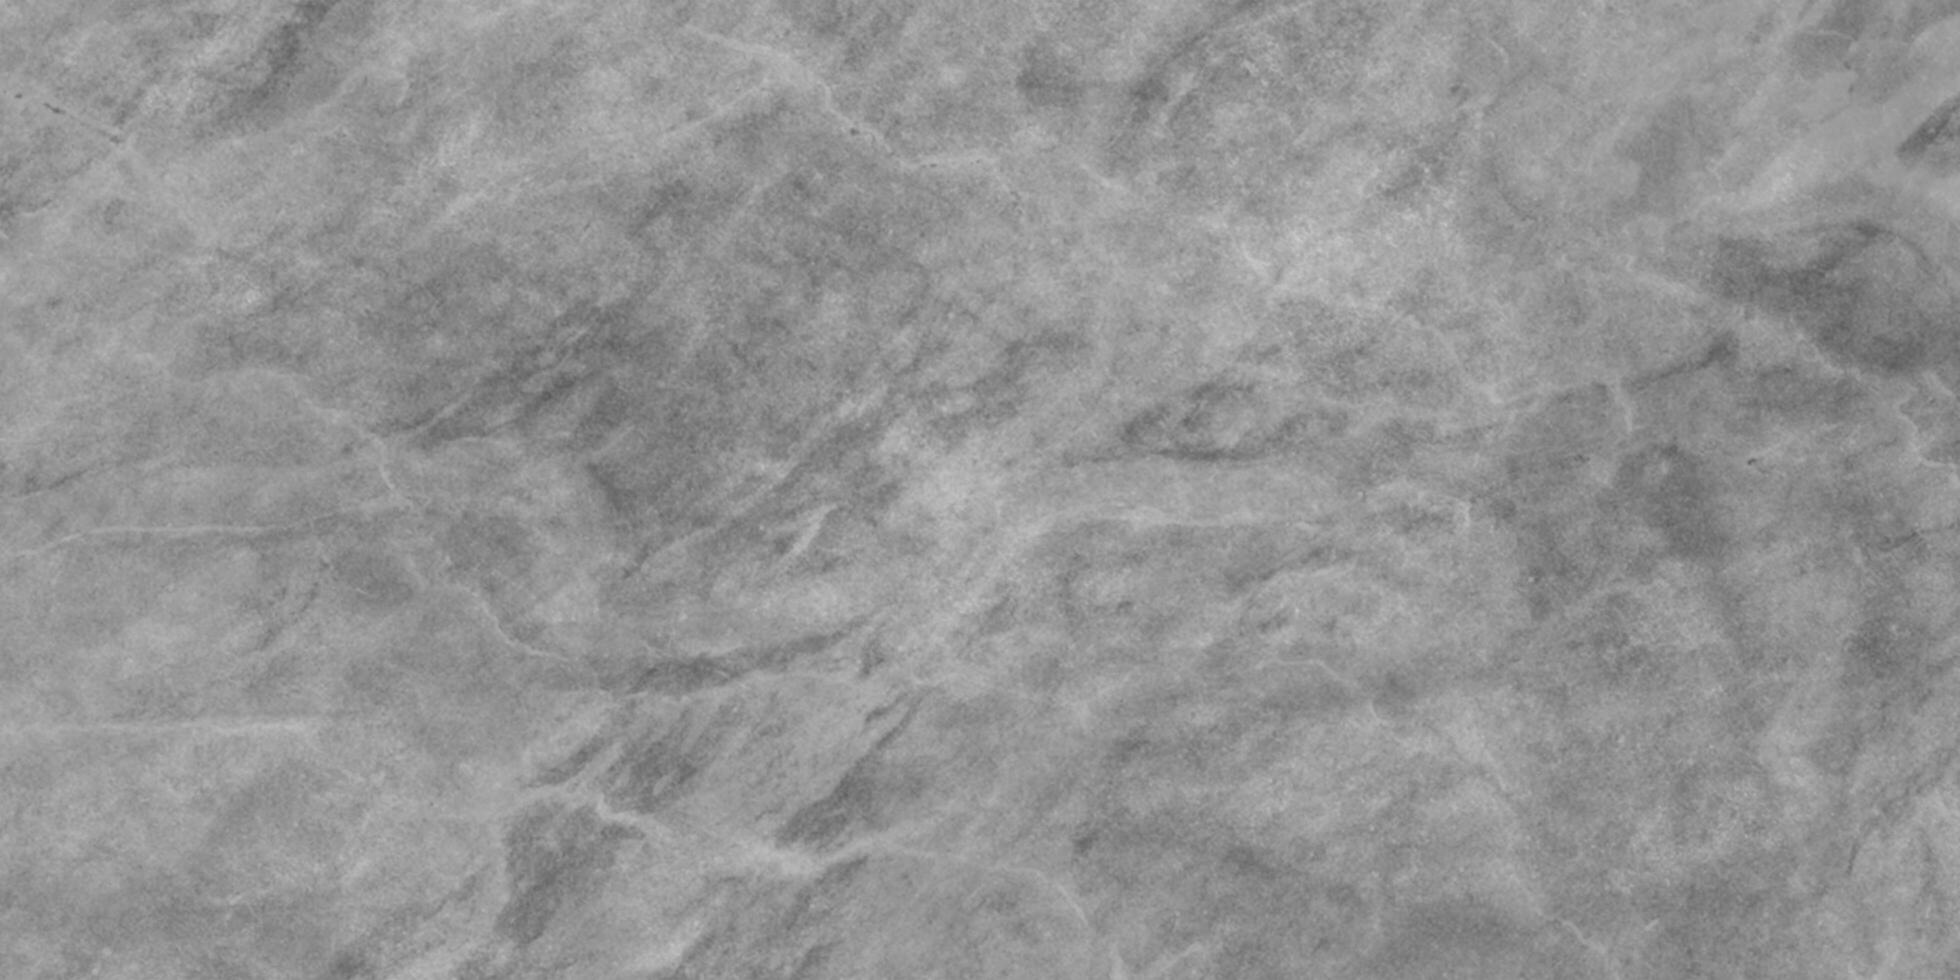 resumen sin costura y retro modelo gris y blanco Roca hormigón pared resumen fondo, resumen gris sombras grunge textura, pulido mármol textura Perfecto para pared y baño decoración. foto